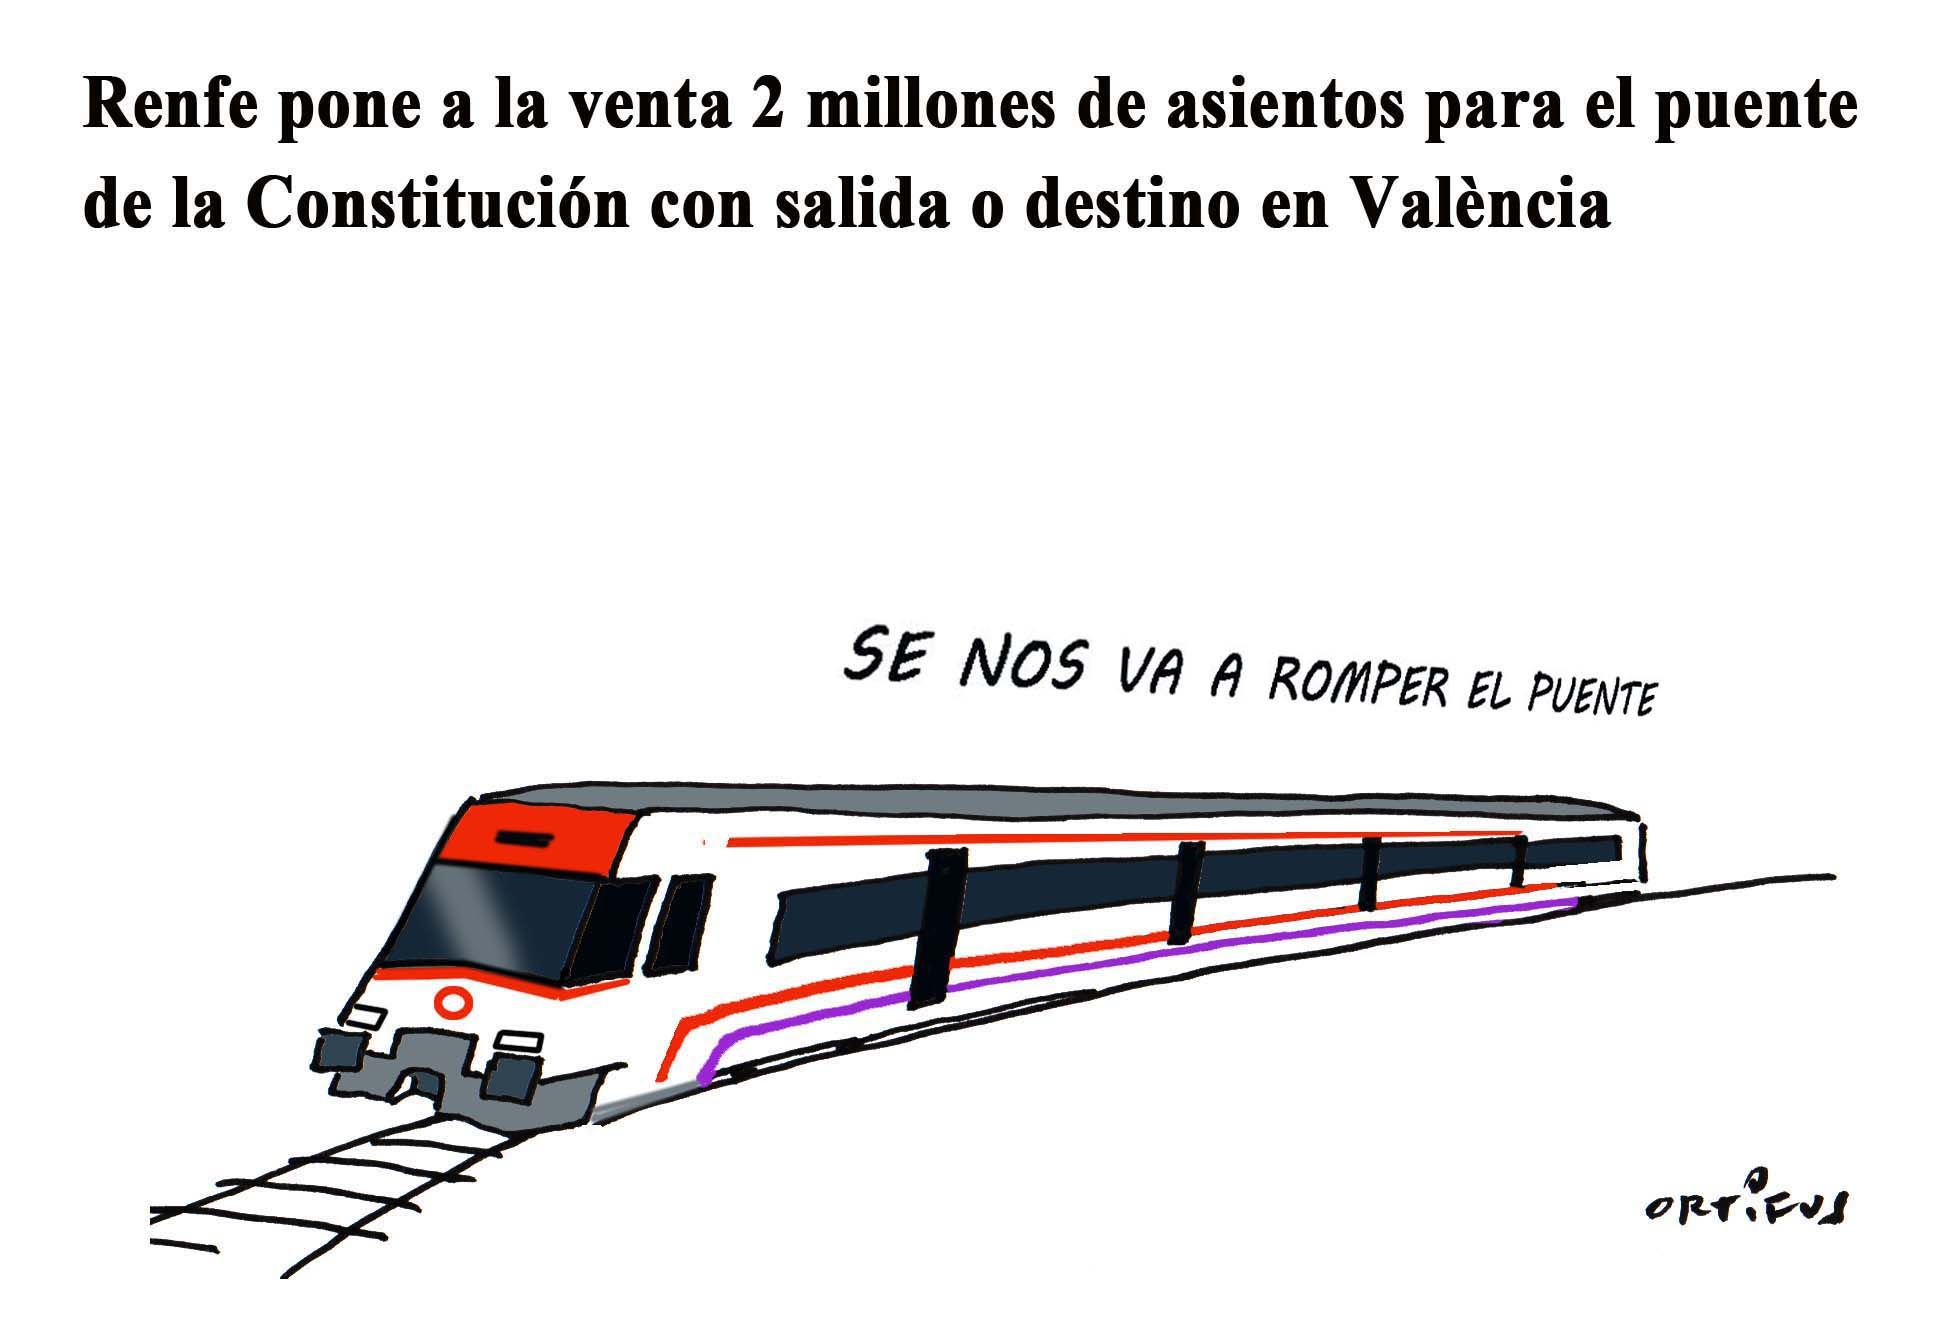 Renfe pone a la venta 2 millones de asientos para el puente con salida o destino en València